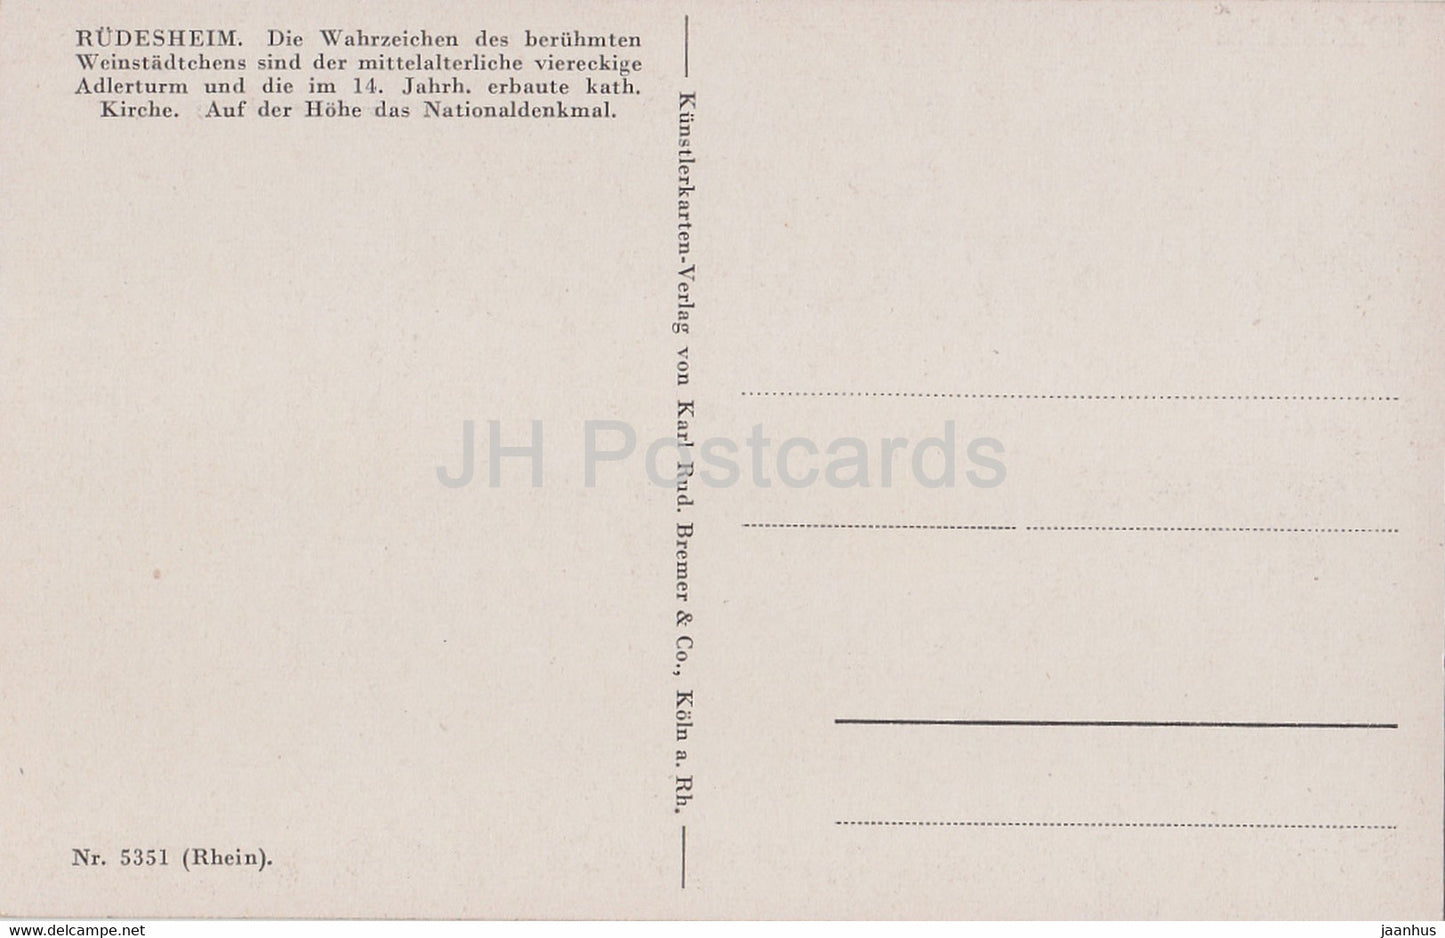 Rudesheim - 5351 - illustration - old postcard - Germany - unused